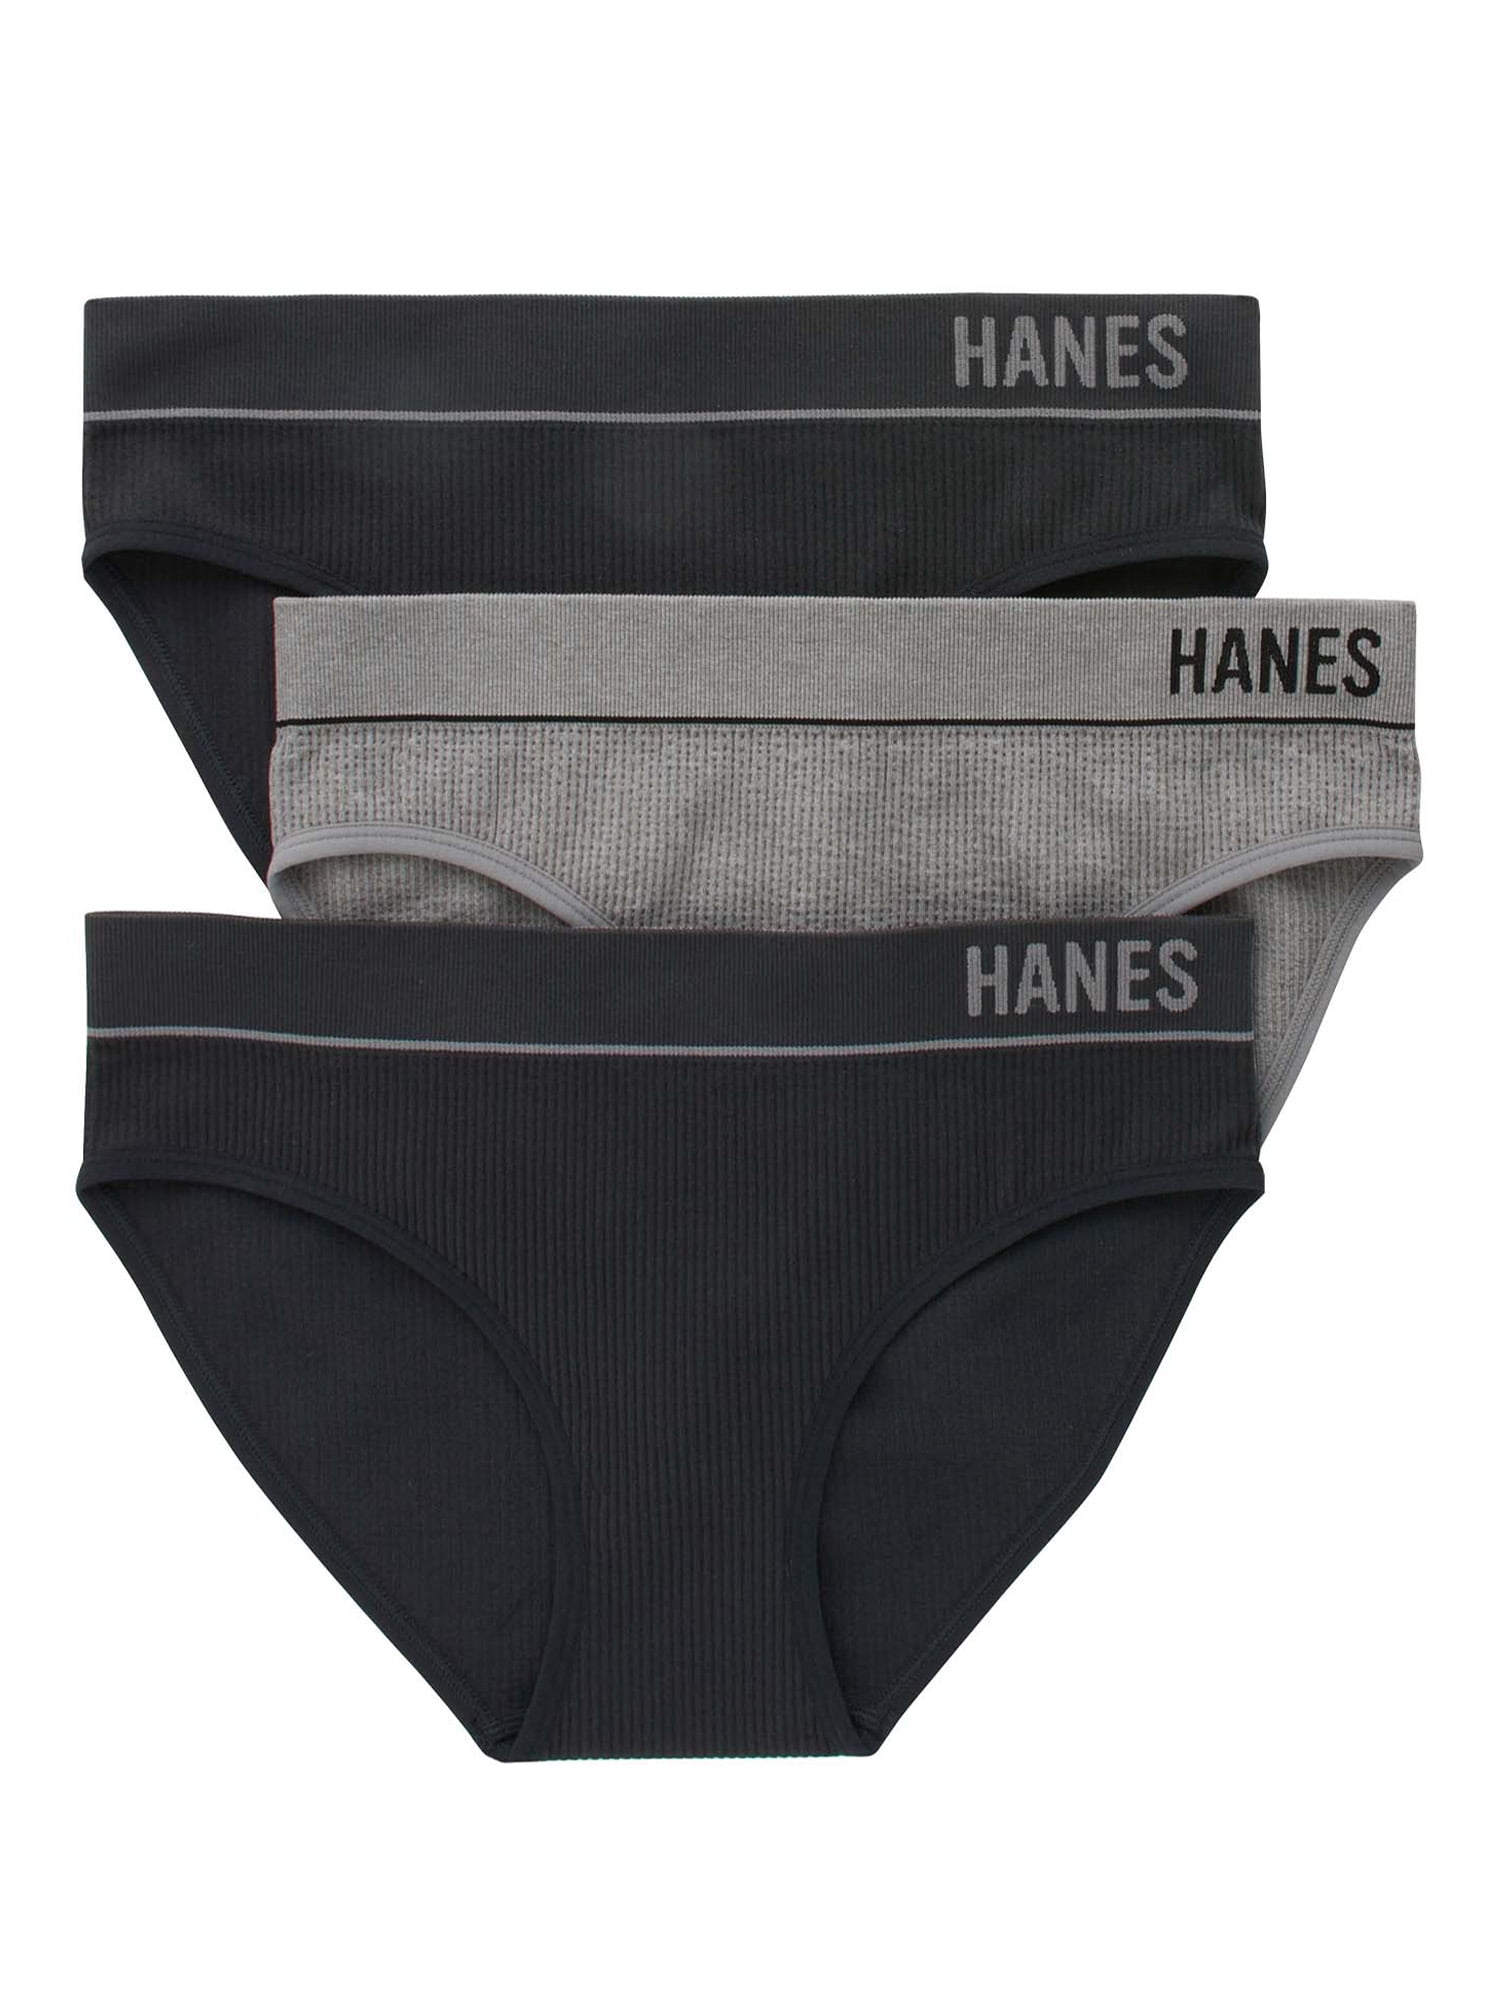 Hanes Women's Panties BIKINIS 3-Pack 42SBAS seamless NO PANTY